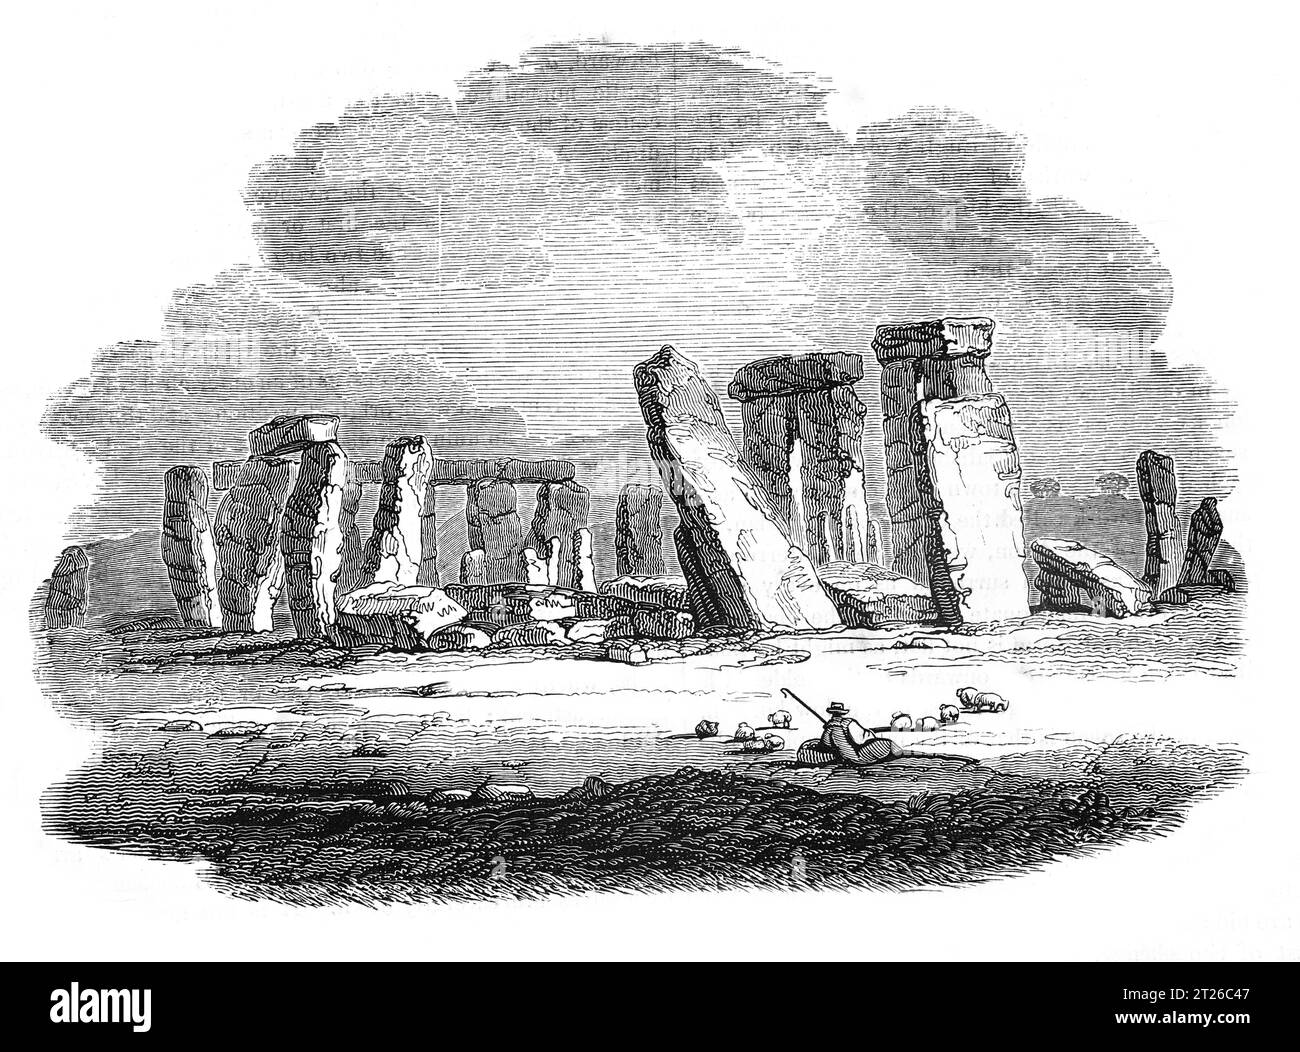 Stonehenge avant restauration vers 1860. Illustration en noir et blanc de la 'Vieille Angleterre' publiée par James Sangster en 1860. Banque D'Images